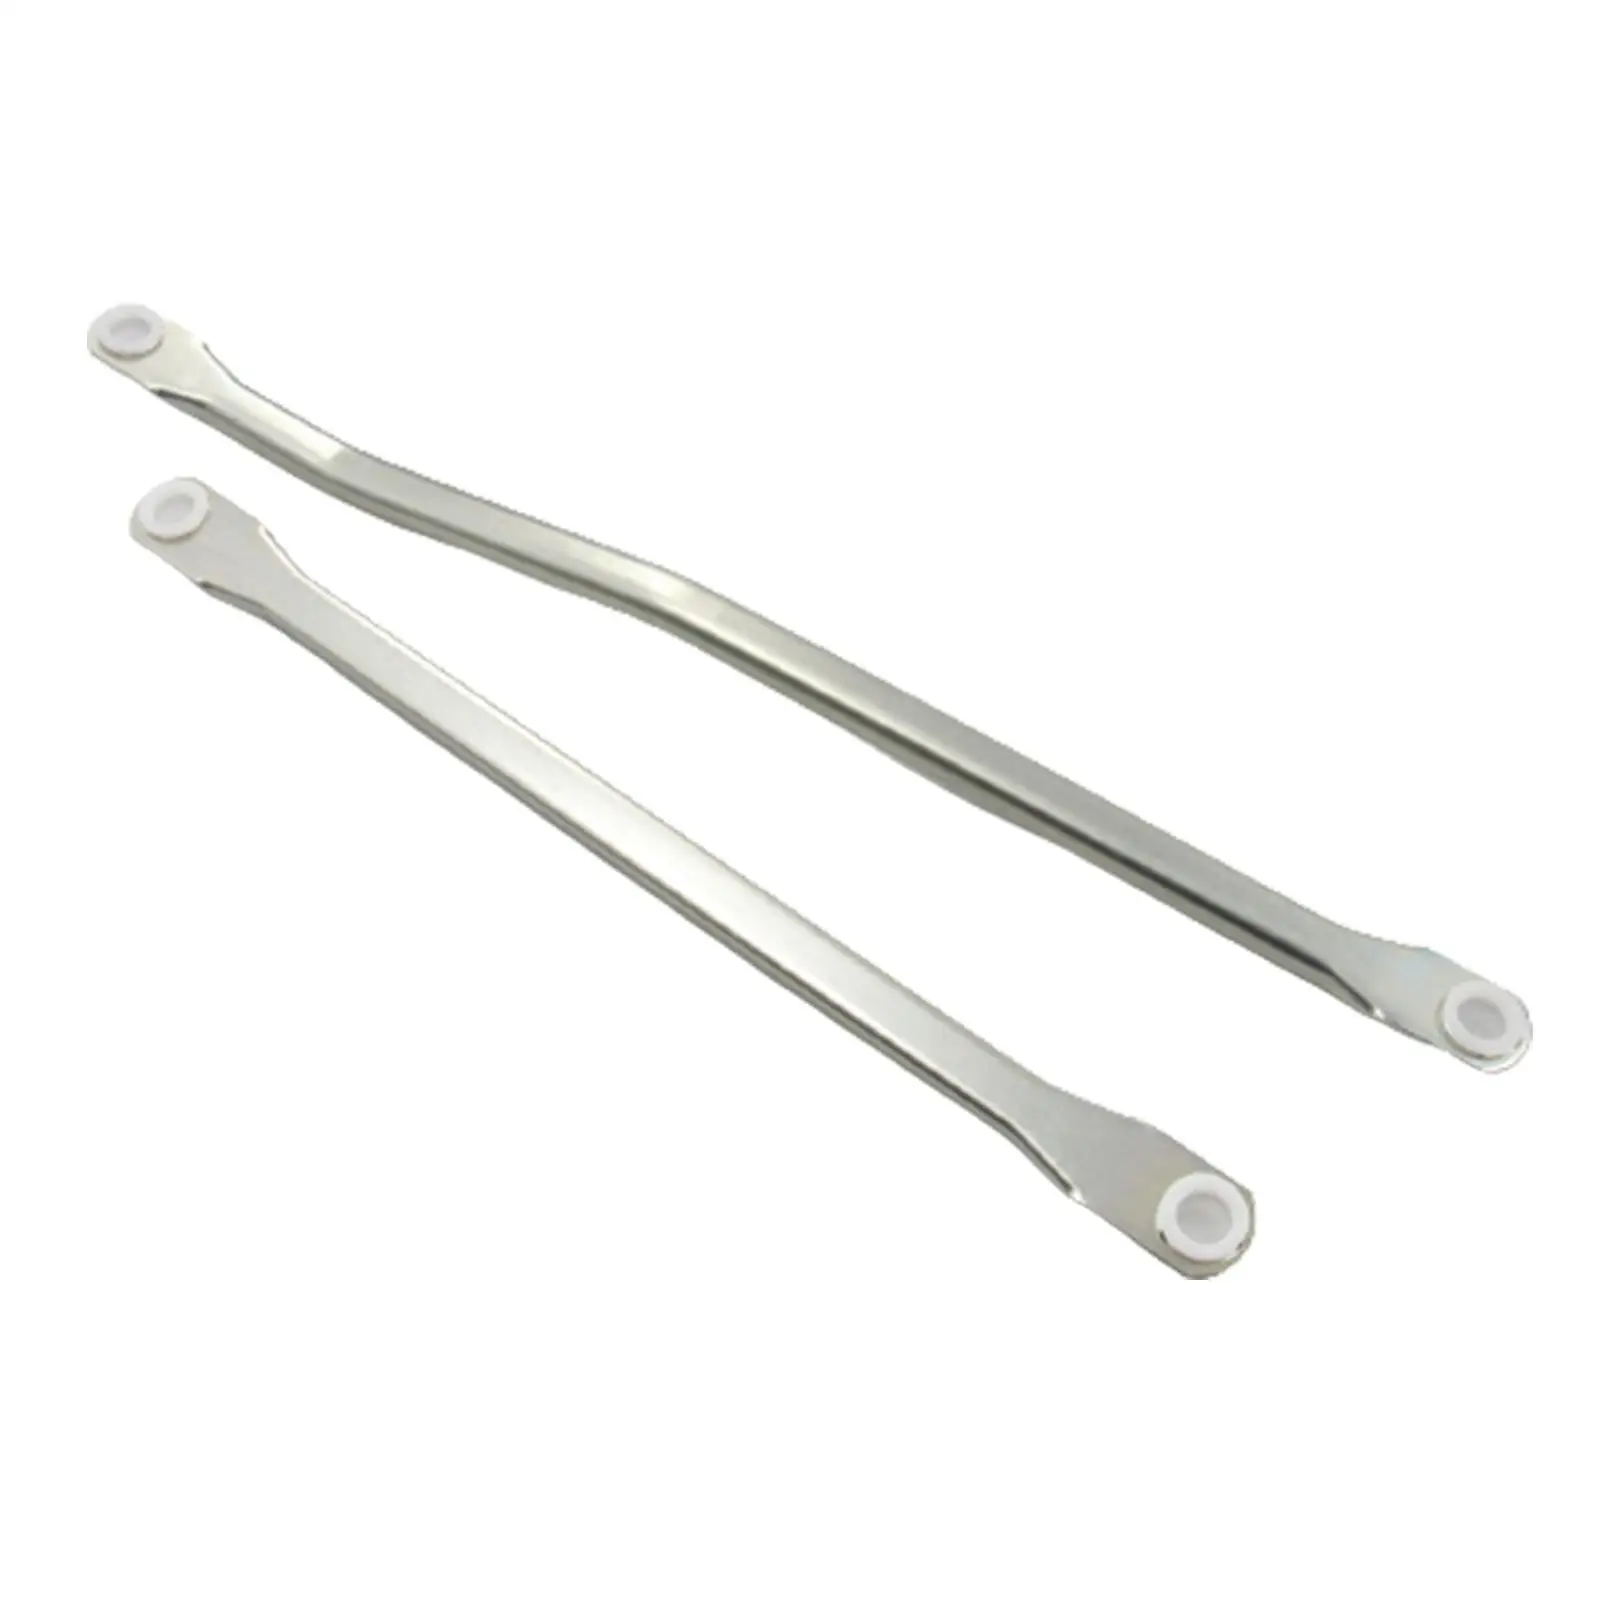 Windscreen Wiper Motor Linkage Push Rod Arm Repair Tools for Nissan Qashqai J10 Jj10 07-15 Professional Auto Accessories